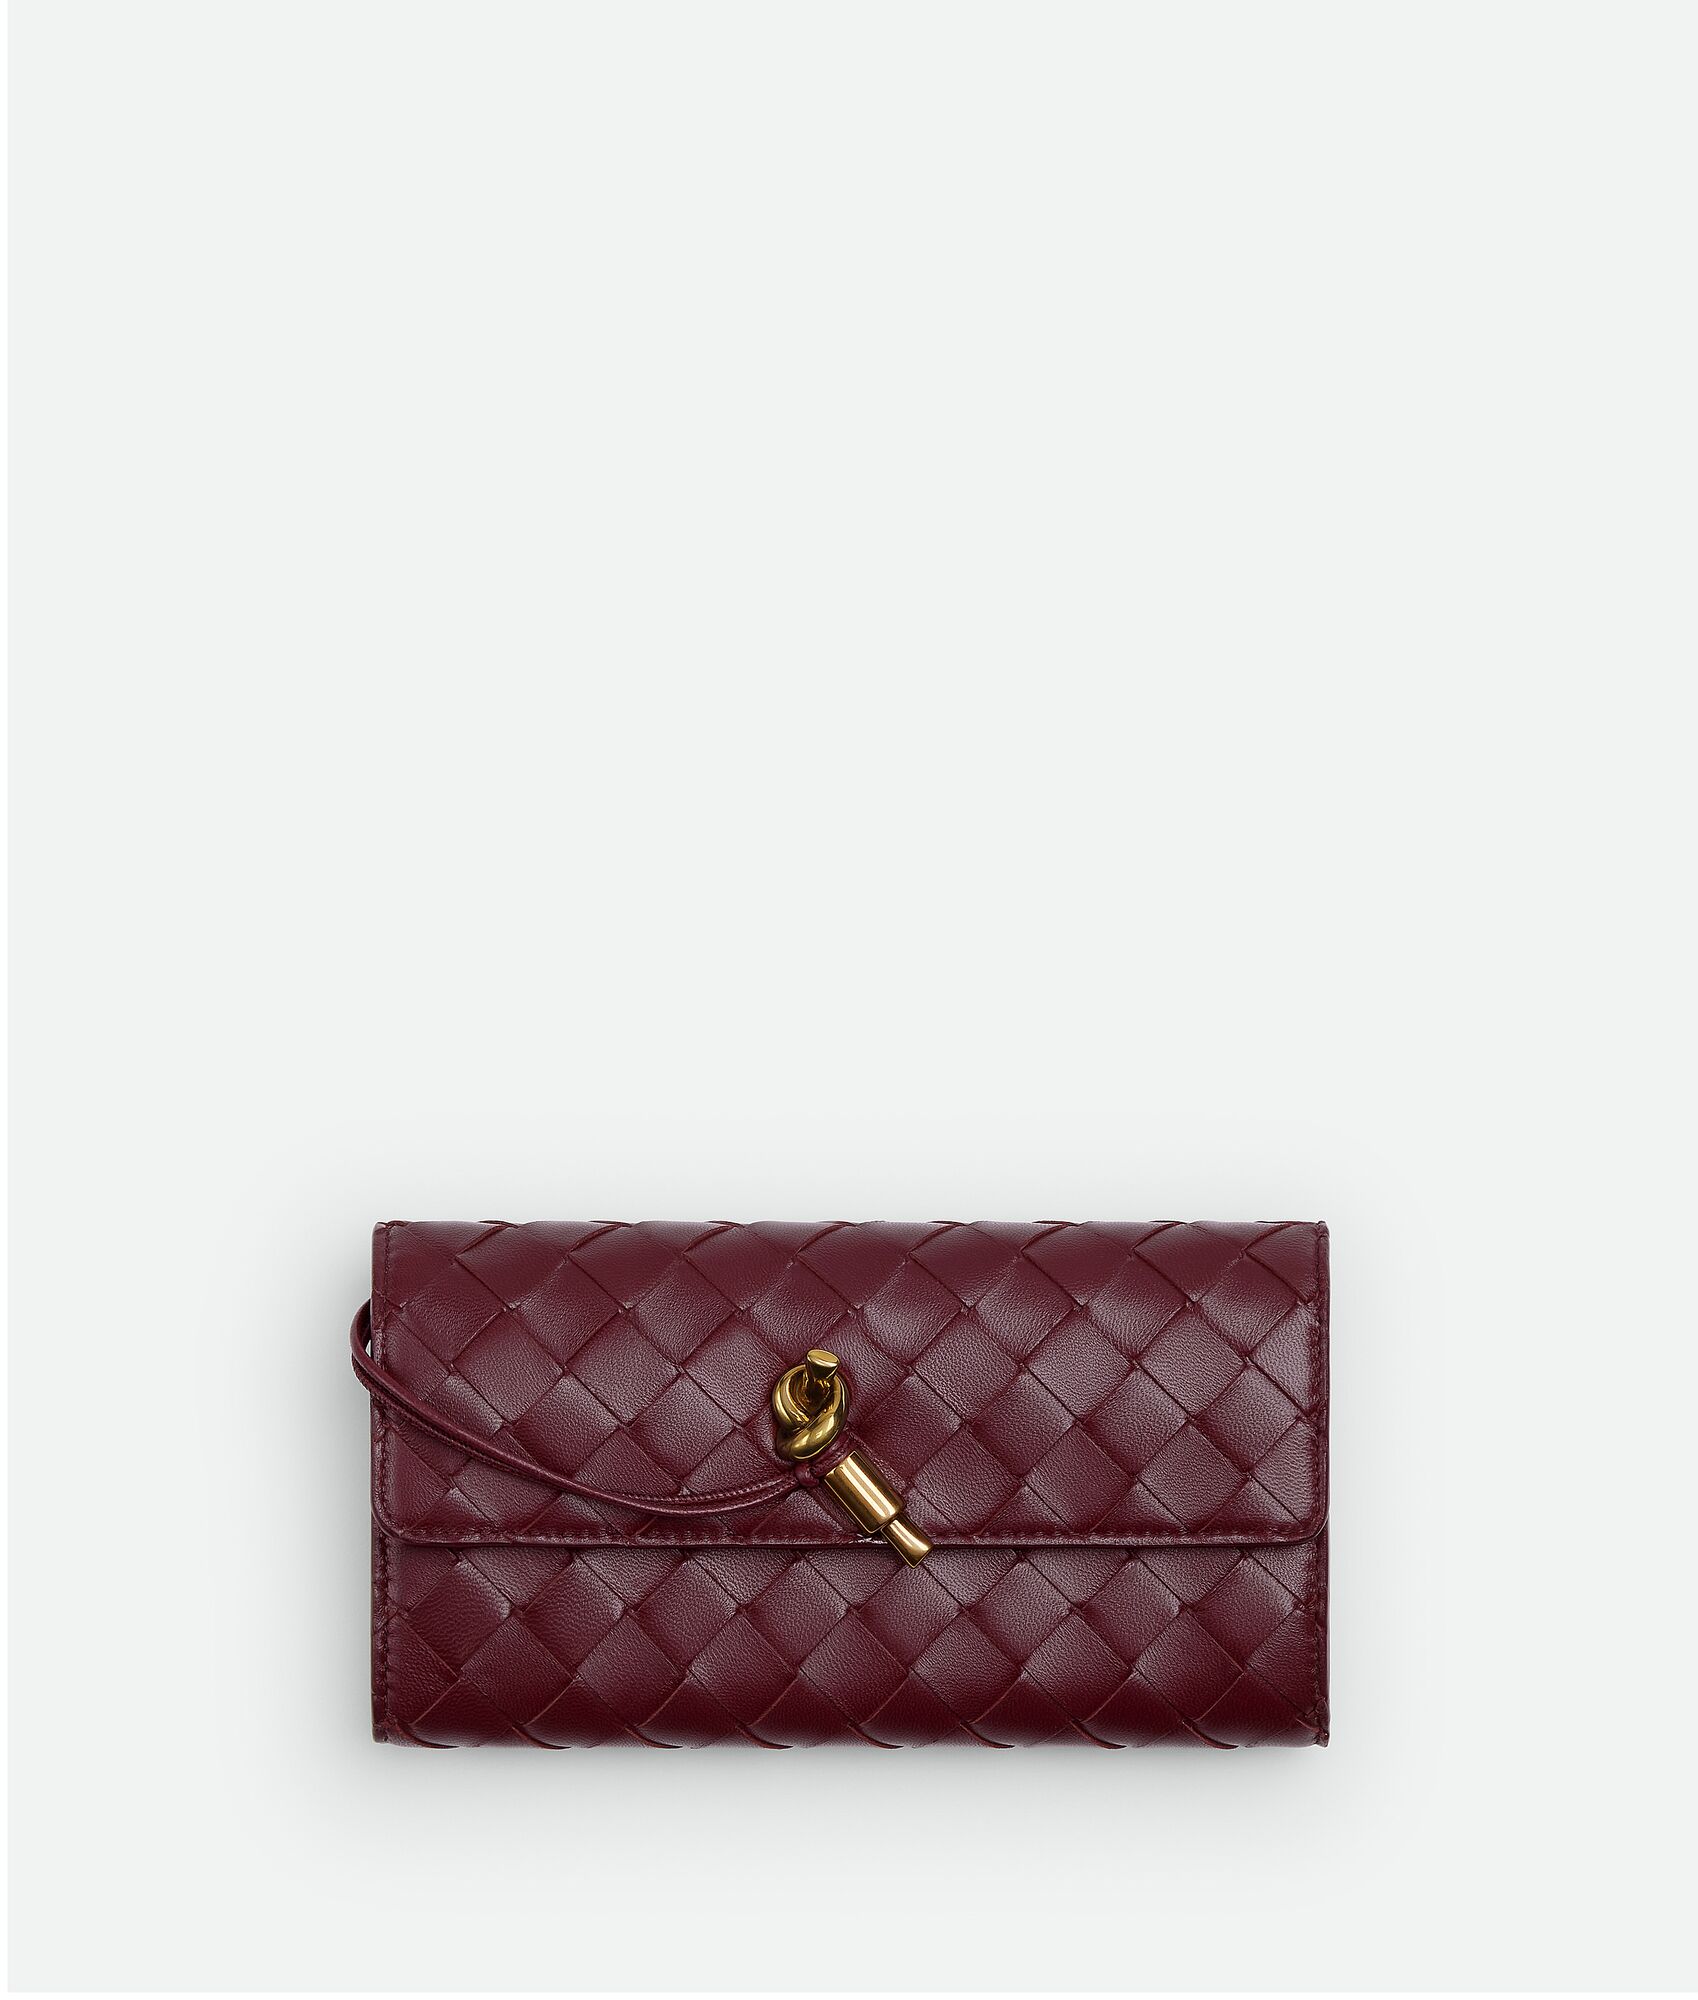 40代女性におすすめなセンスのいいレディース財布はボッテガ・ヴェネタのアンディアーモ ラージ フラップウォレット